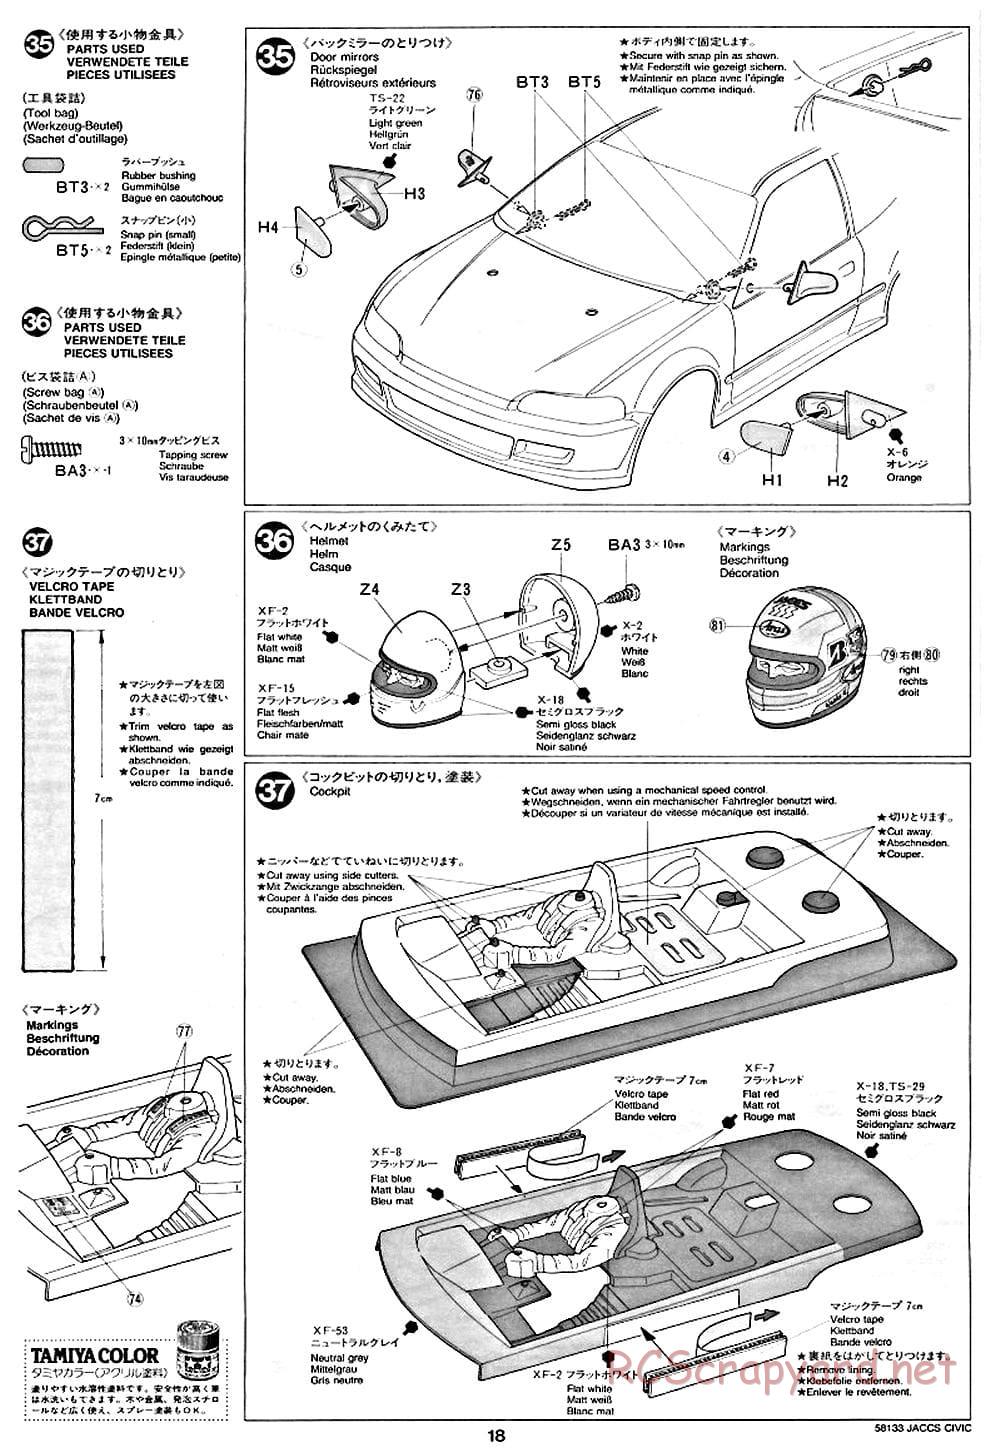 Tamiya - JACCS Honda Civic - FF-01 Chassis - Manual - Page 18